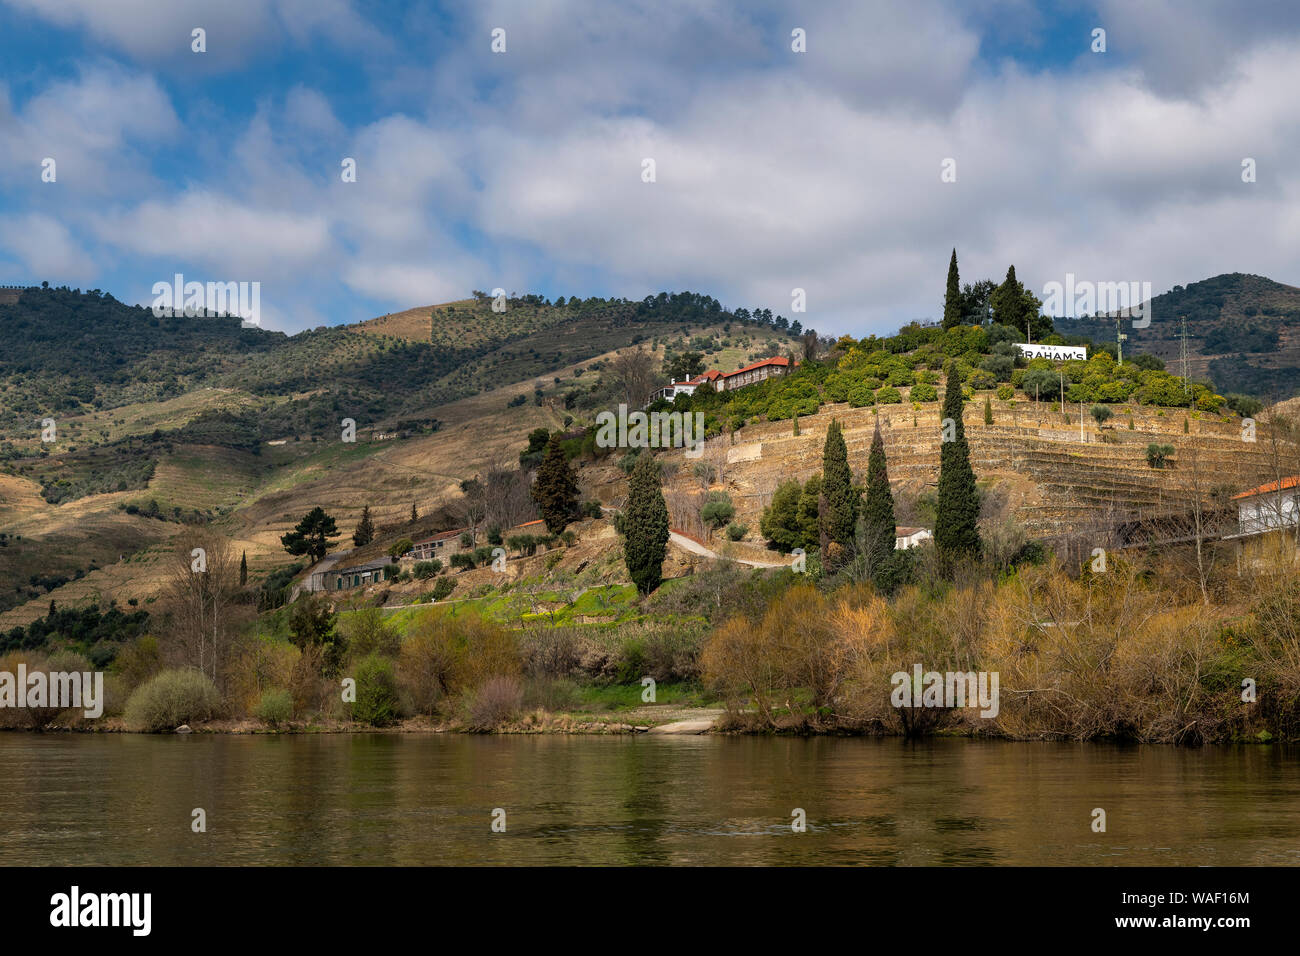 Tua, Portugal - März 10, 2019: Blick von der Quinta dos Malvedos Weingut aus dem Fluss Douro in Portugal. Stockfoto